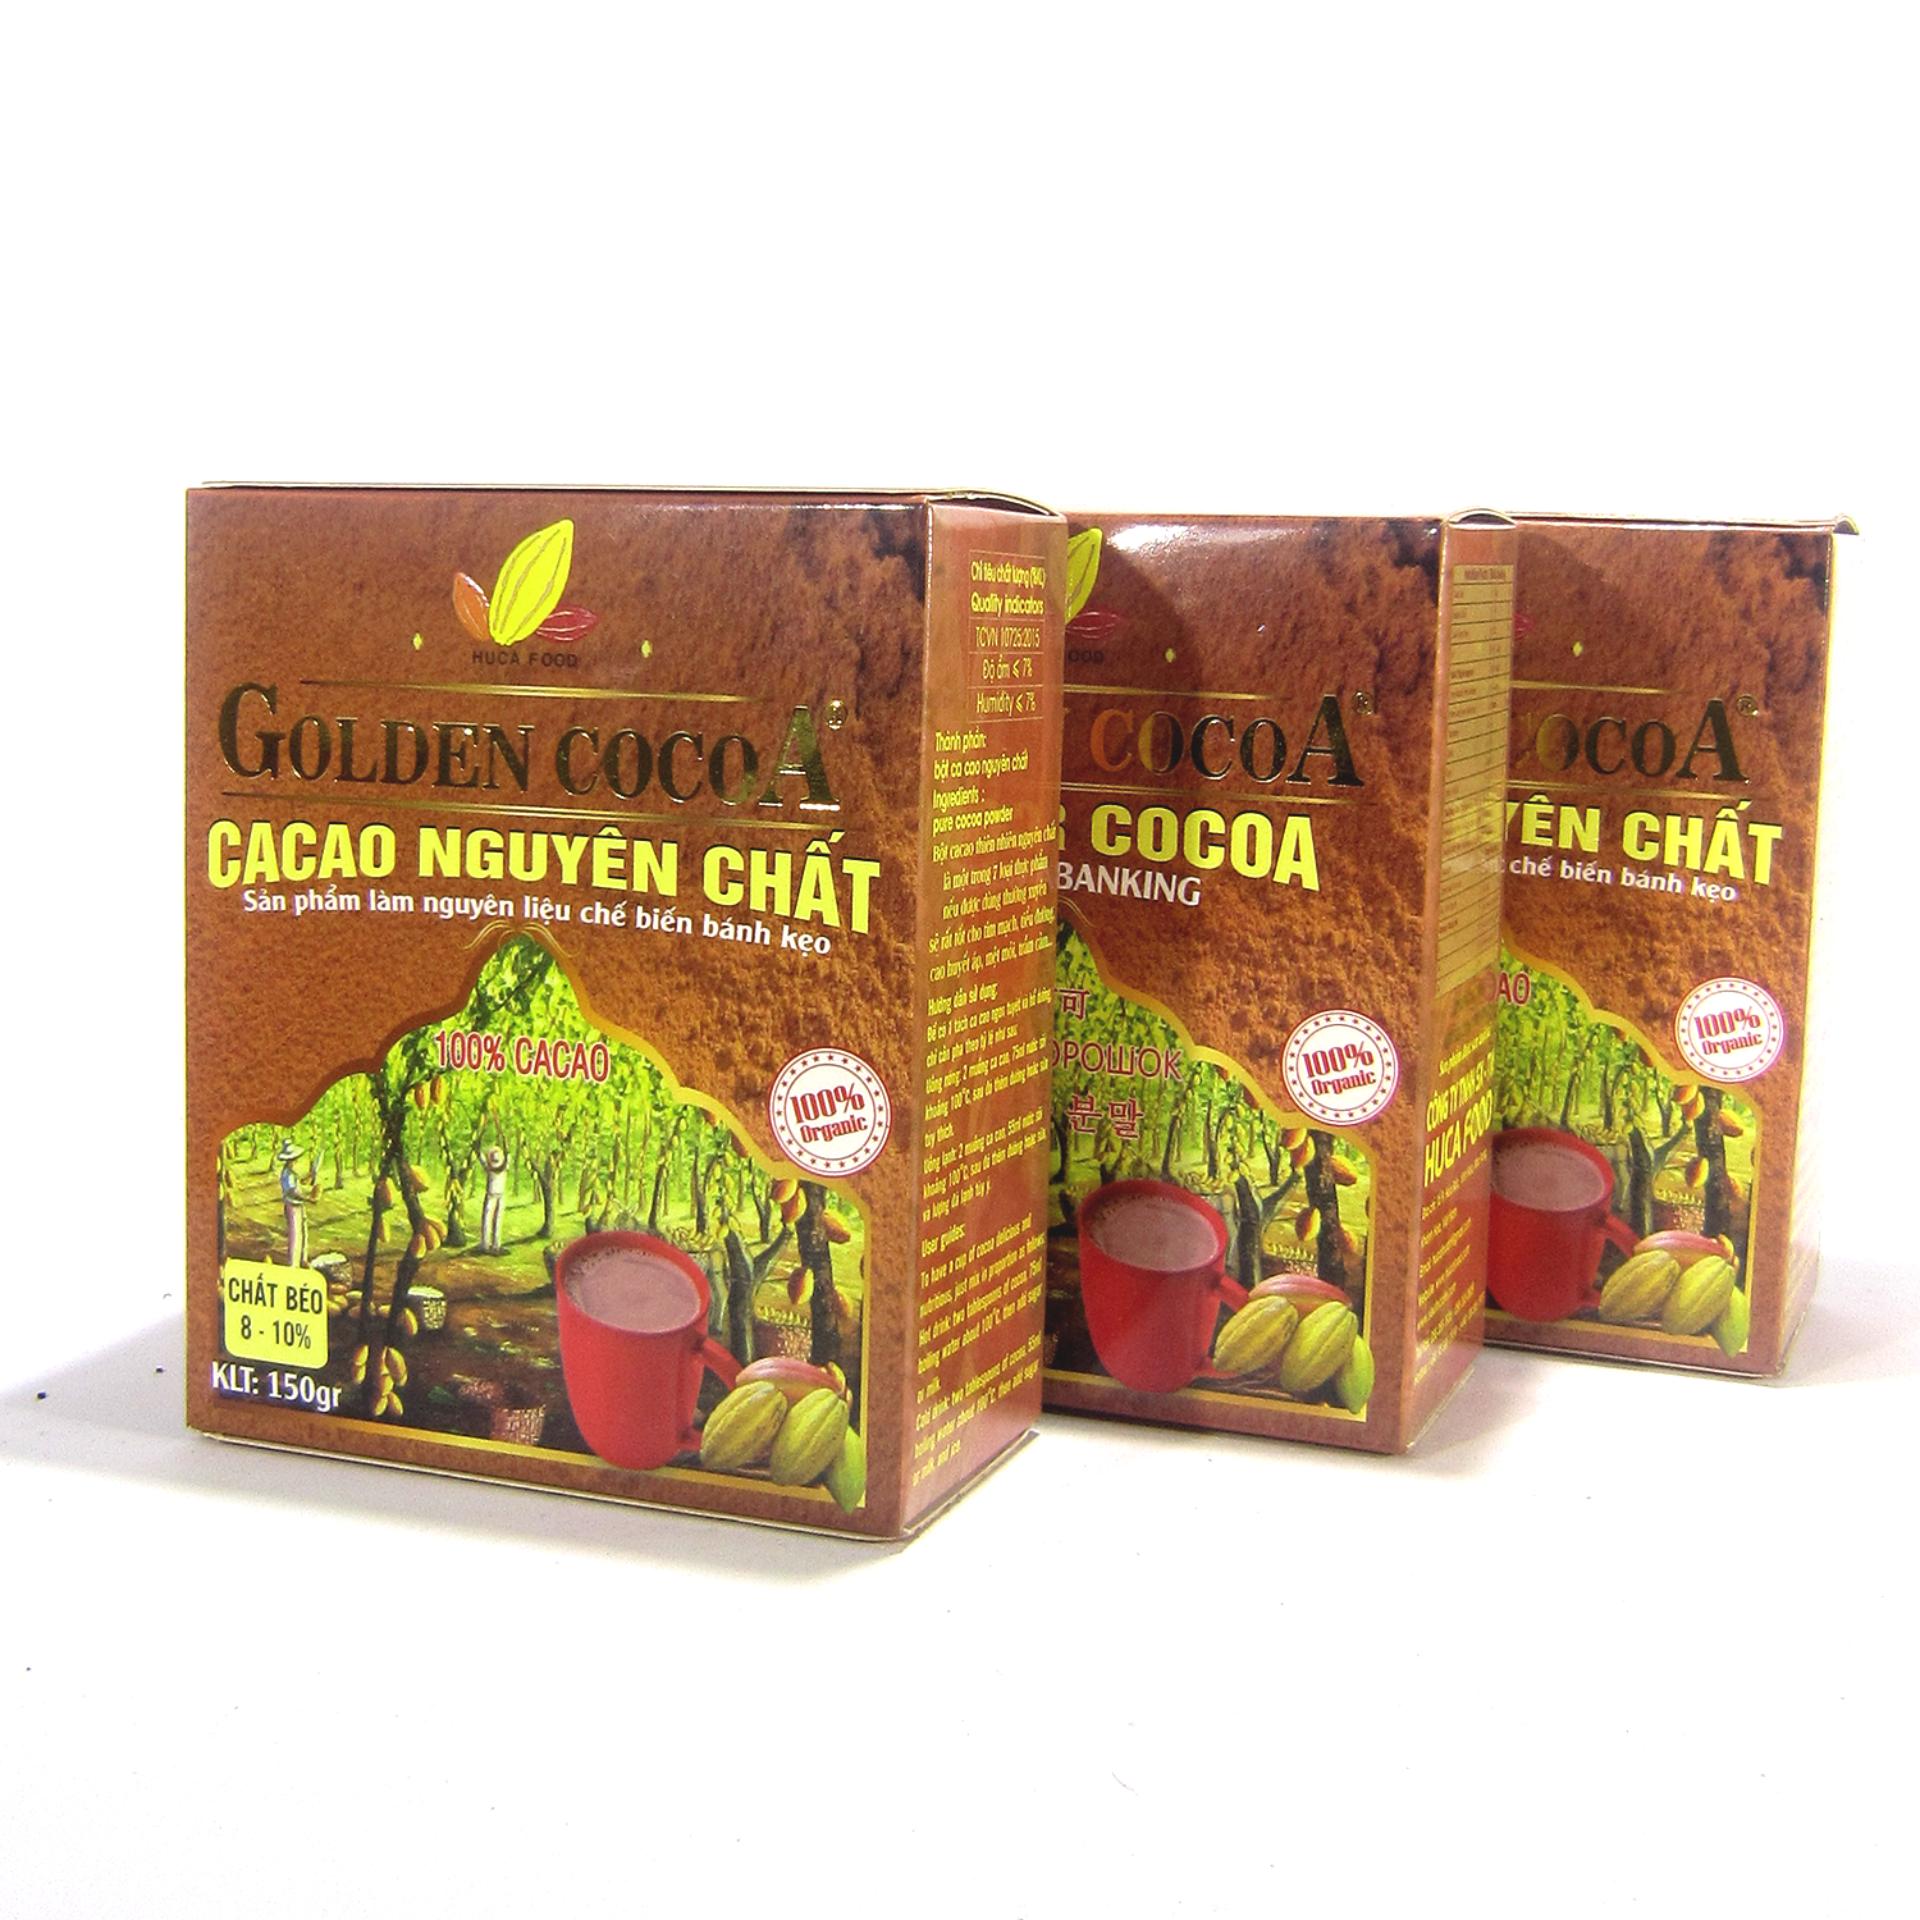 Bộ 3 hộp 150g cacao nguyên chất Golden Cocoa dùng làm bánh kẹo